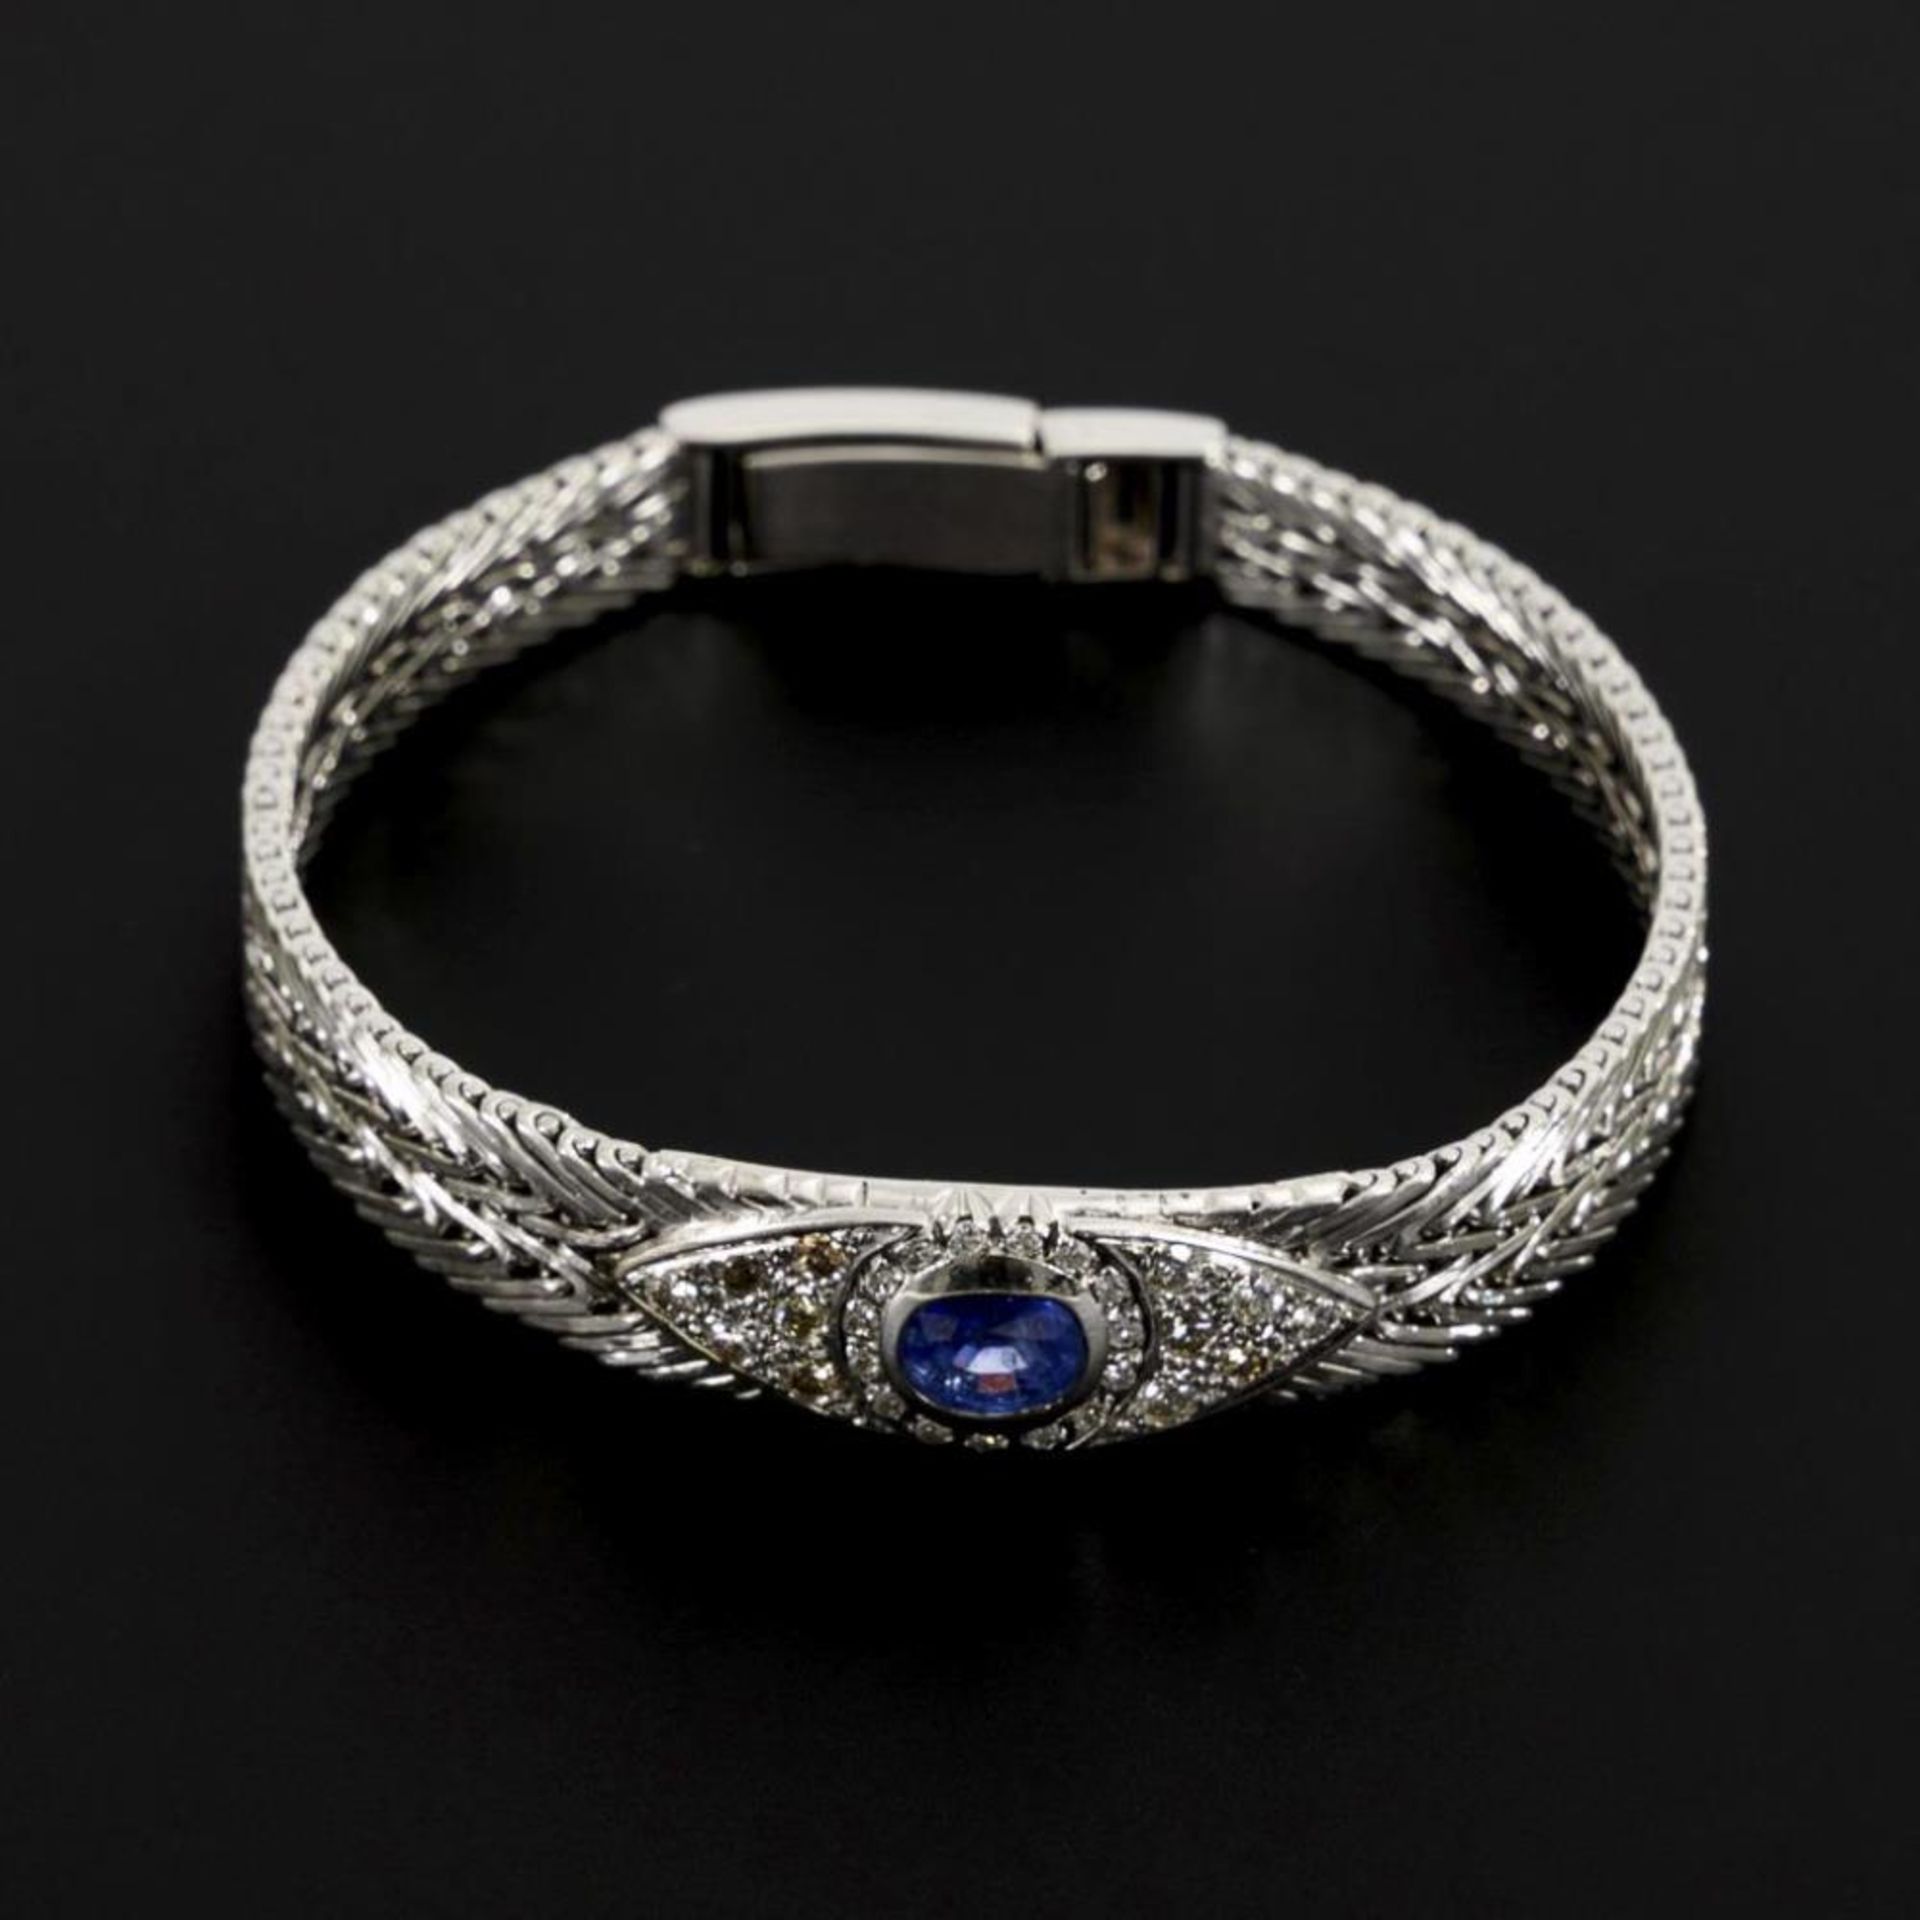 Armband mit Saphir, Brillanten und Diamanten.